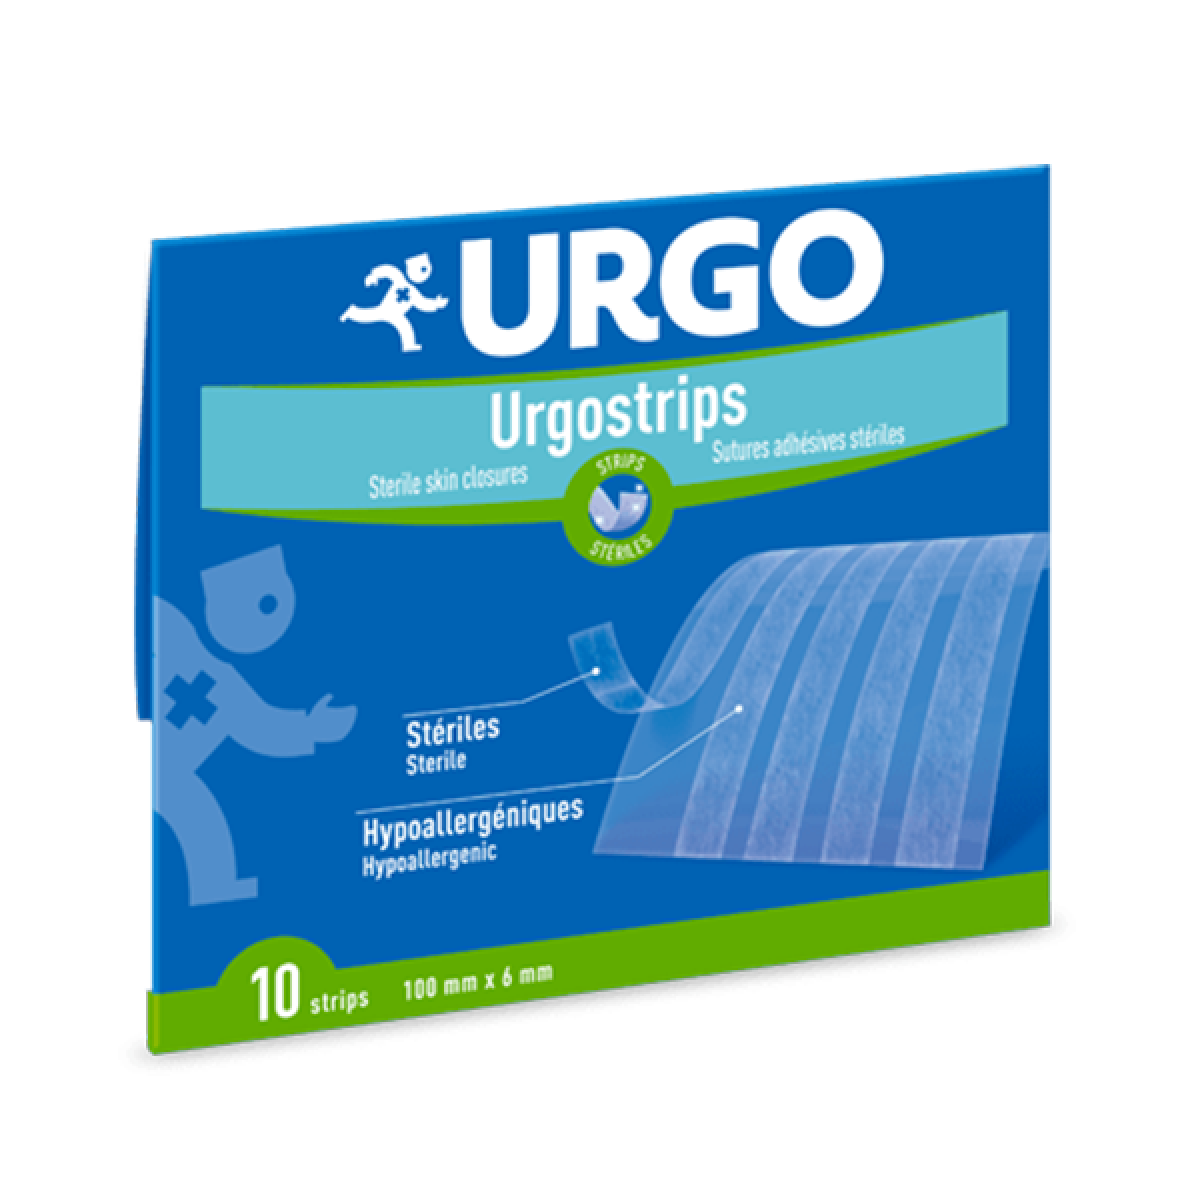 Urgo Urgostrips Sutures Adhésives Stériles 100x6mm Strips 10